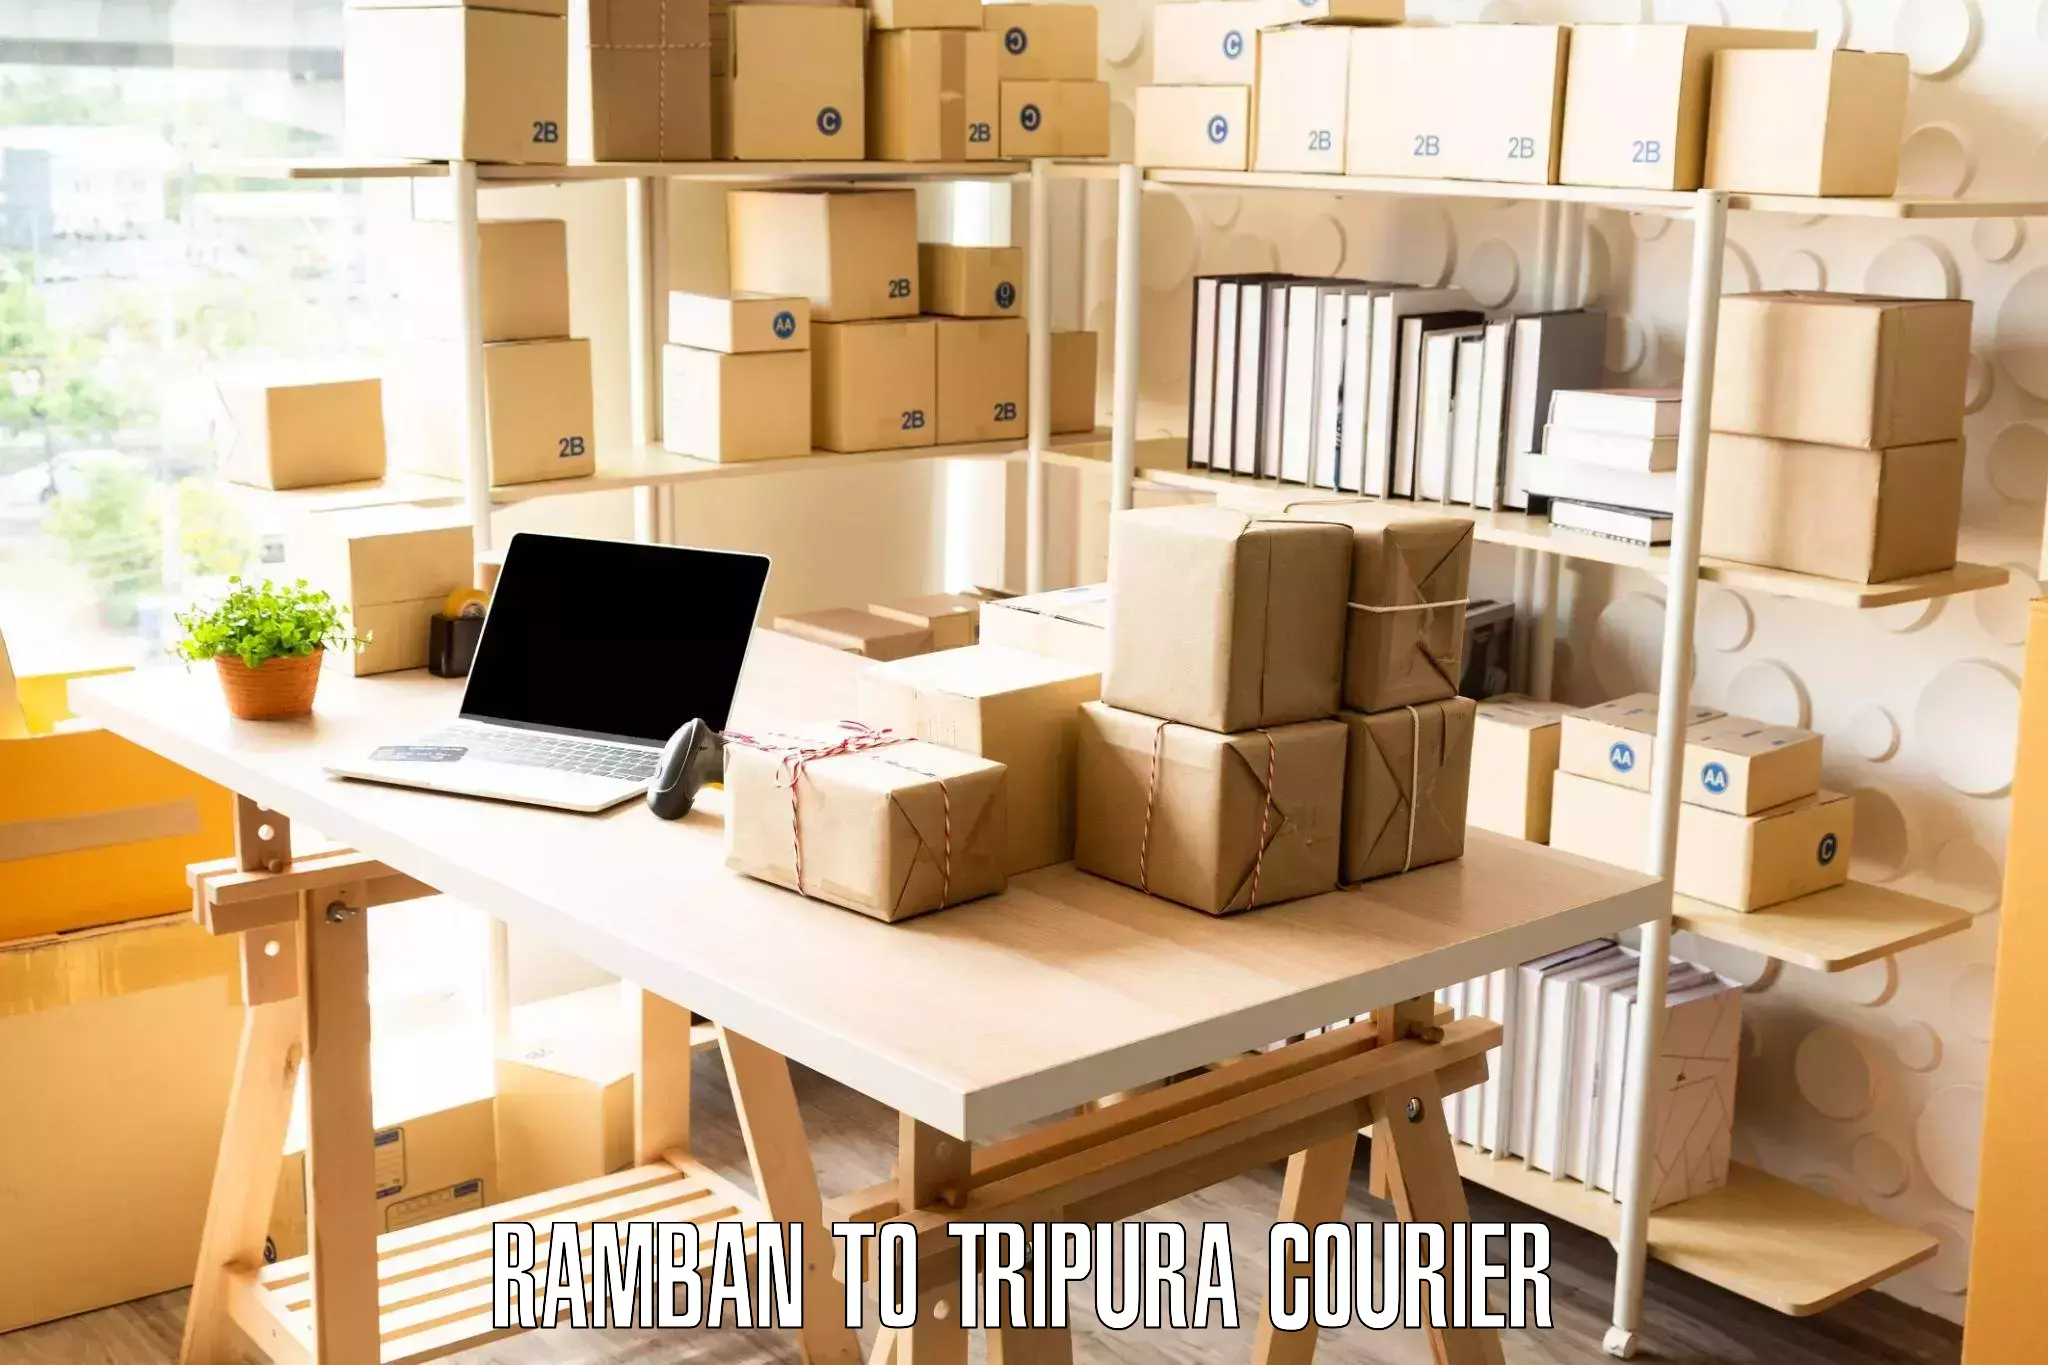 Furniture moving experts Ramban to Tripura